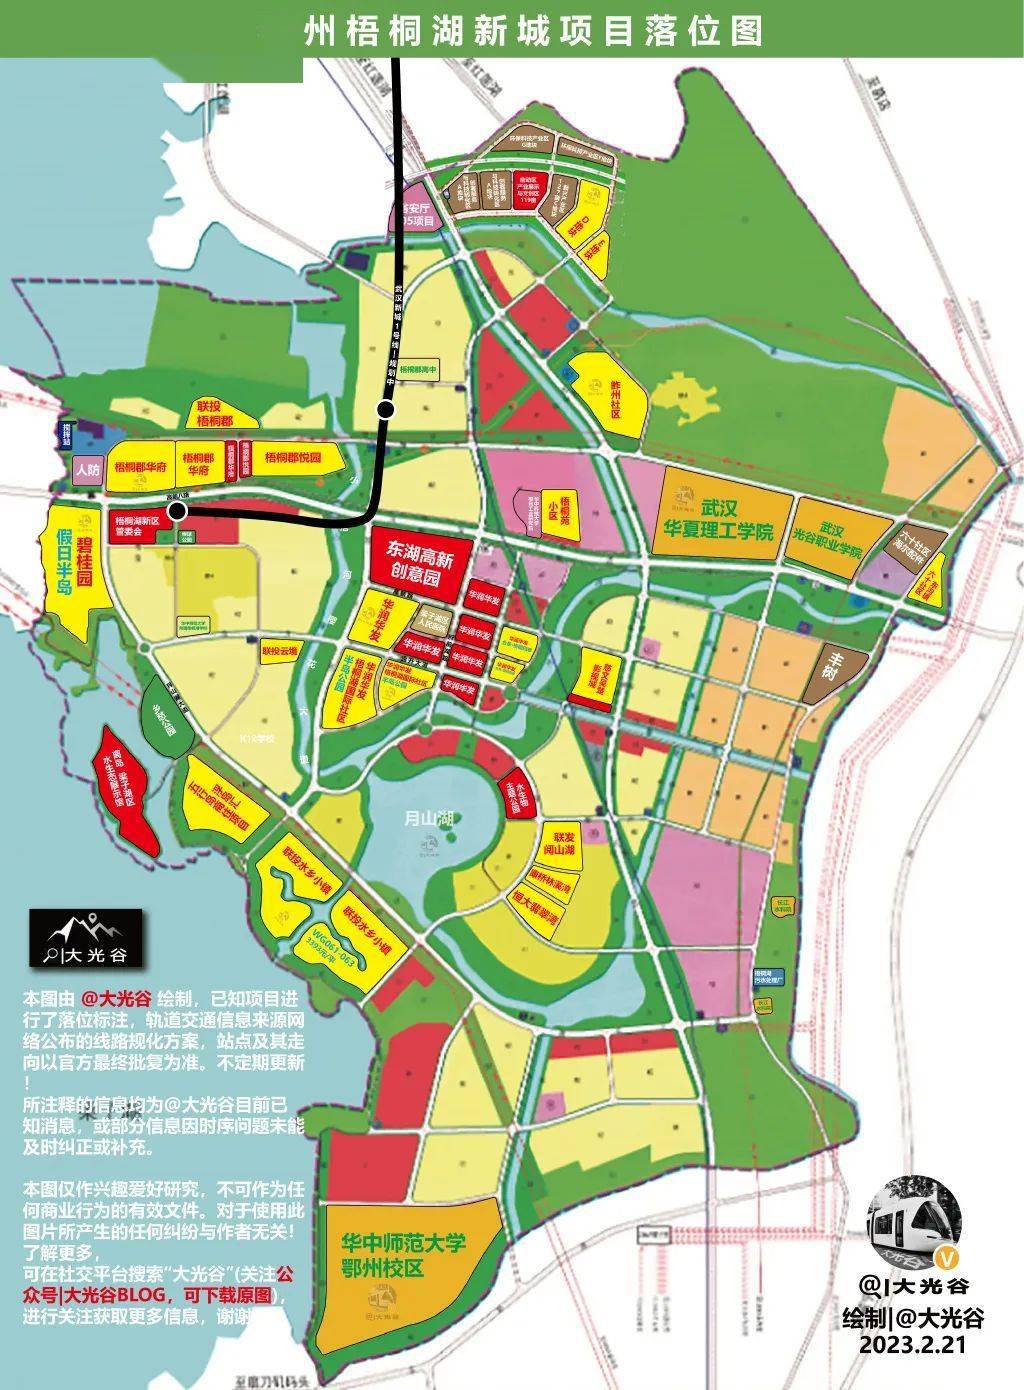 与鄂州葛华片区有所不同,作为科教文化宜居区的武汉新城梧桐湖片区,拟